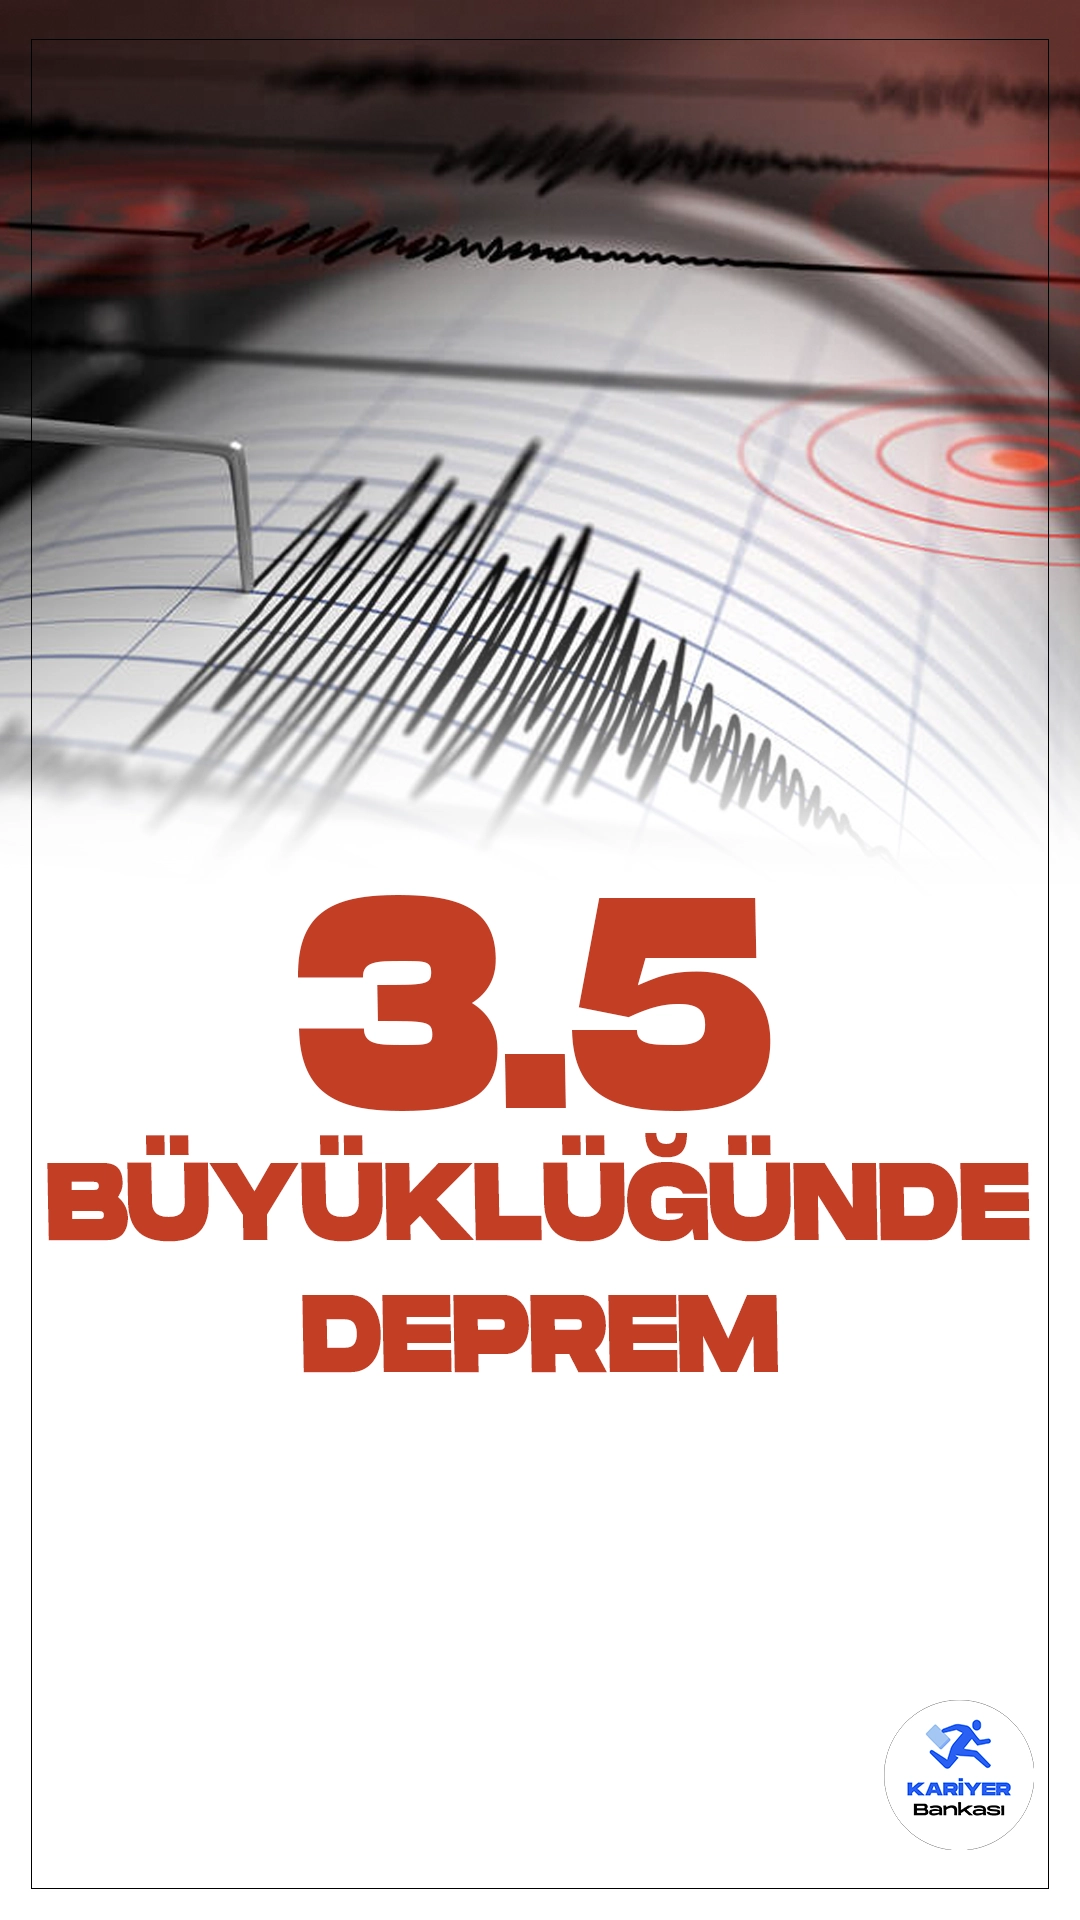 Çankırı'da 3.5 Büyüklüğünde Deprem Oldu. İçişleri Bakanlığı Afet ve Acil Durum Yönetimi Başkanlığı sayfası üzerinden yayımlanan verilerde, Çankırı'nın Ilgaz ilçesinde 3.5 büyüklüğünde deprem meydana geldiği aktarıldı.